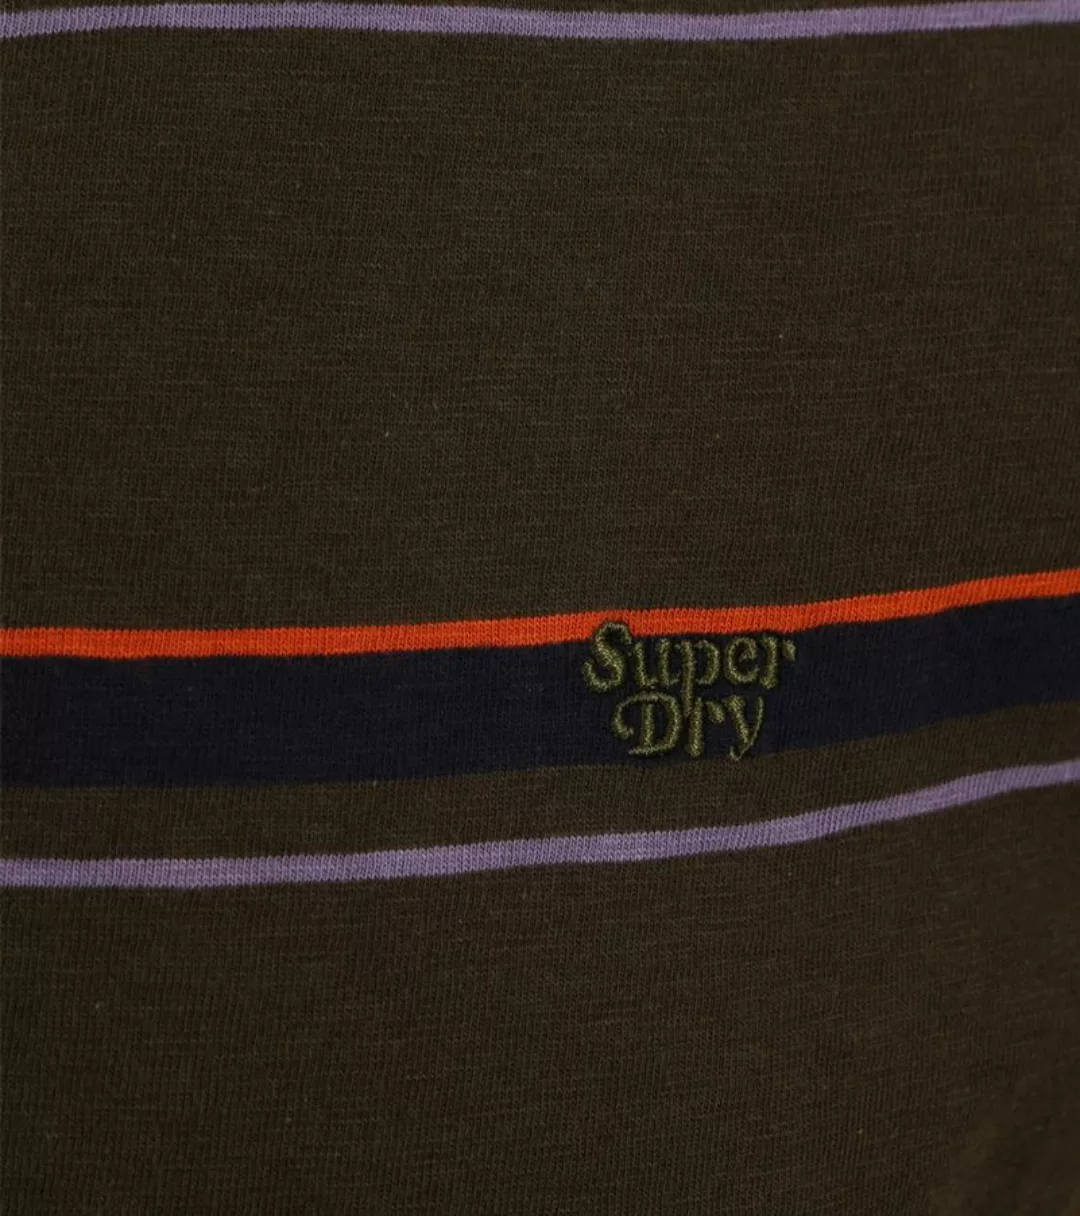 Superdry Poloshirt Jersey Dunkelgrün - Größe M günstig online kaufen